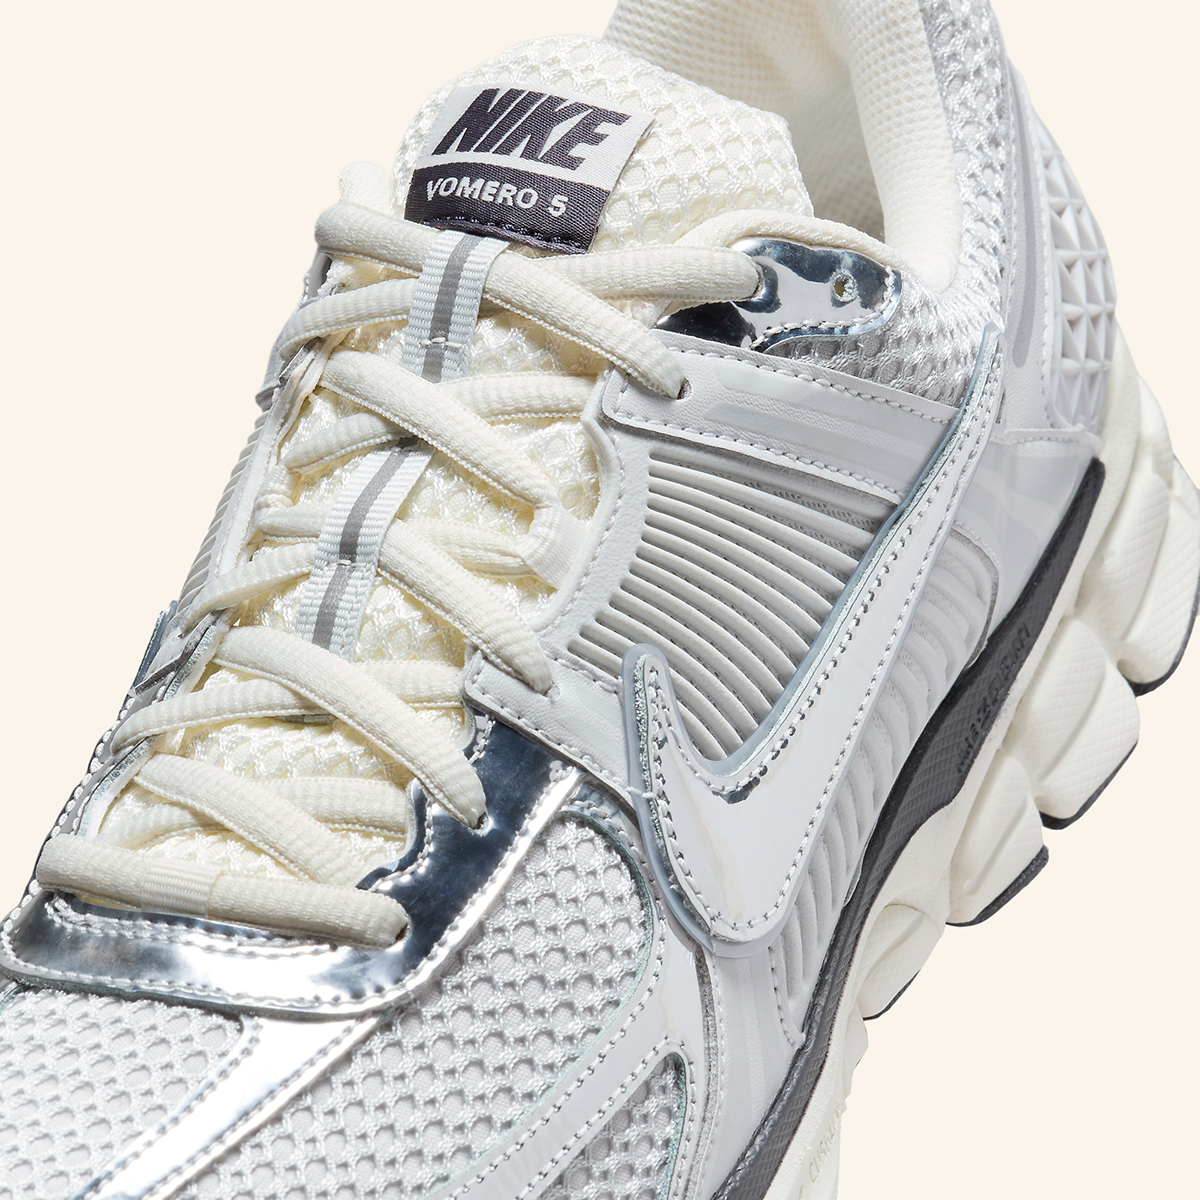 Nike Zoom Vomero 5 Summit White Metallic Silver Hj3758 001 1